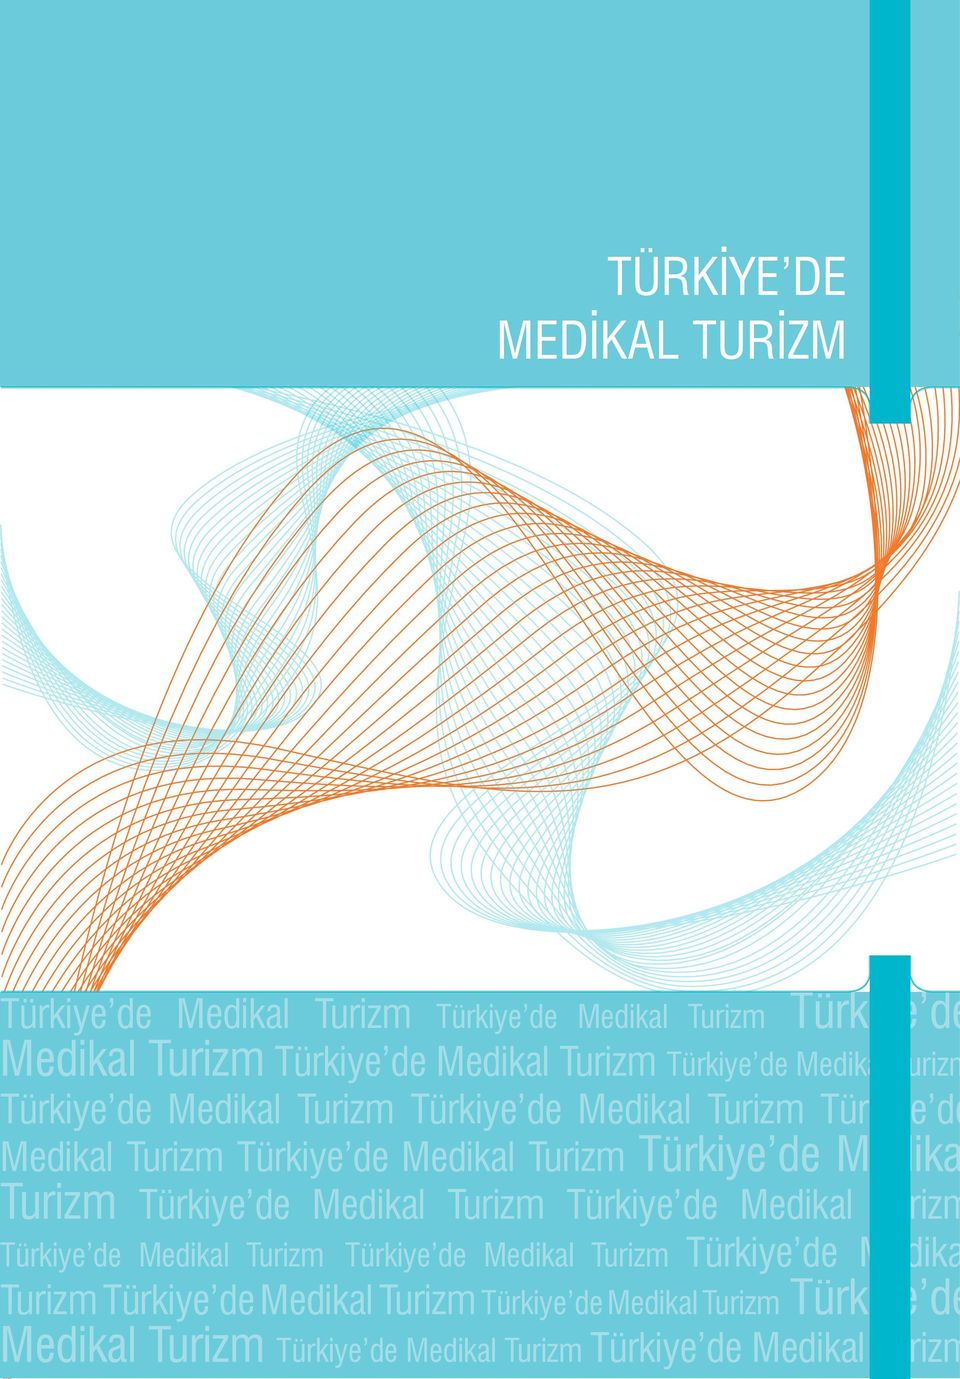 Türkiye de Medika Turizm Türkiye de Medikal Turizm Türkiye de Medikal Turizm Türkiye de Medikal Turizm Türkiye de Medikal Turizm